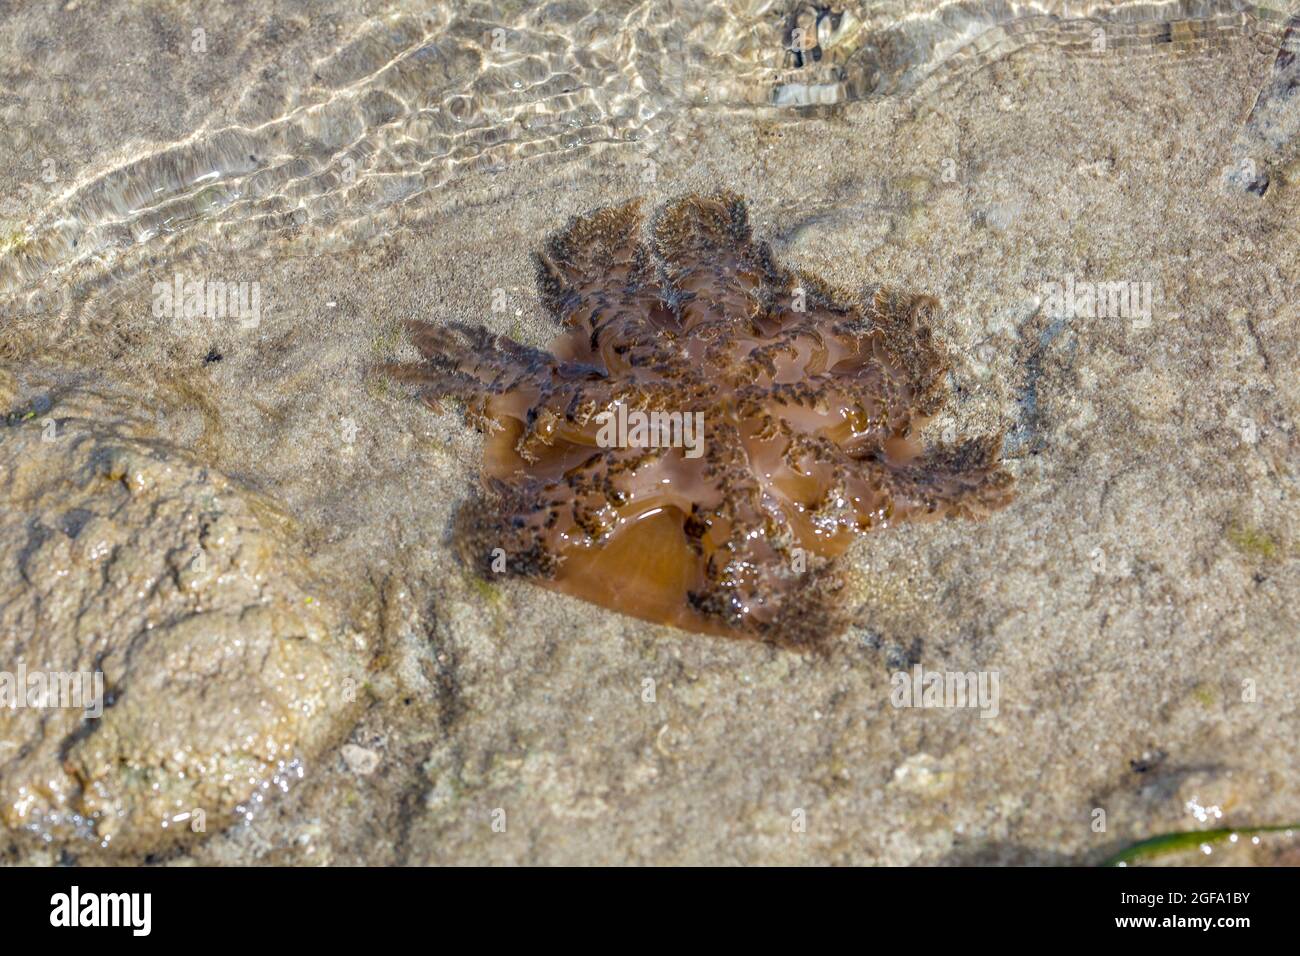 Diese Qualle, Cassiopea medusae, wurde bei Flut an Land gespült und wird wahrscheinlich umkommen, sobald der Ozean zurückgeht, Yap, Mikronesien. Stockfoto